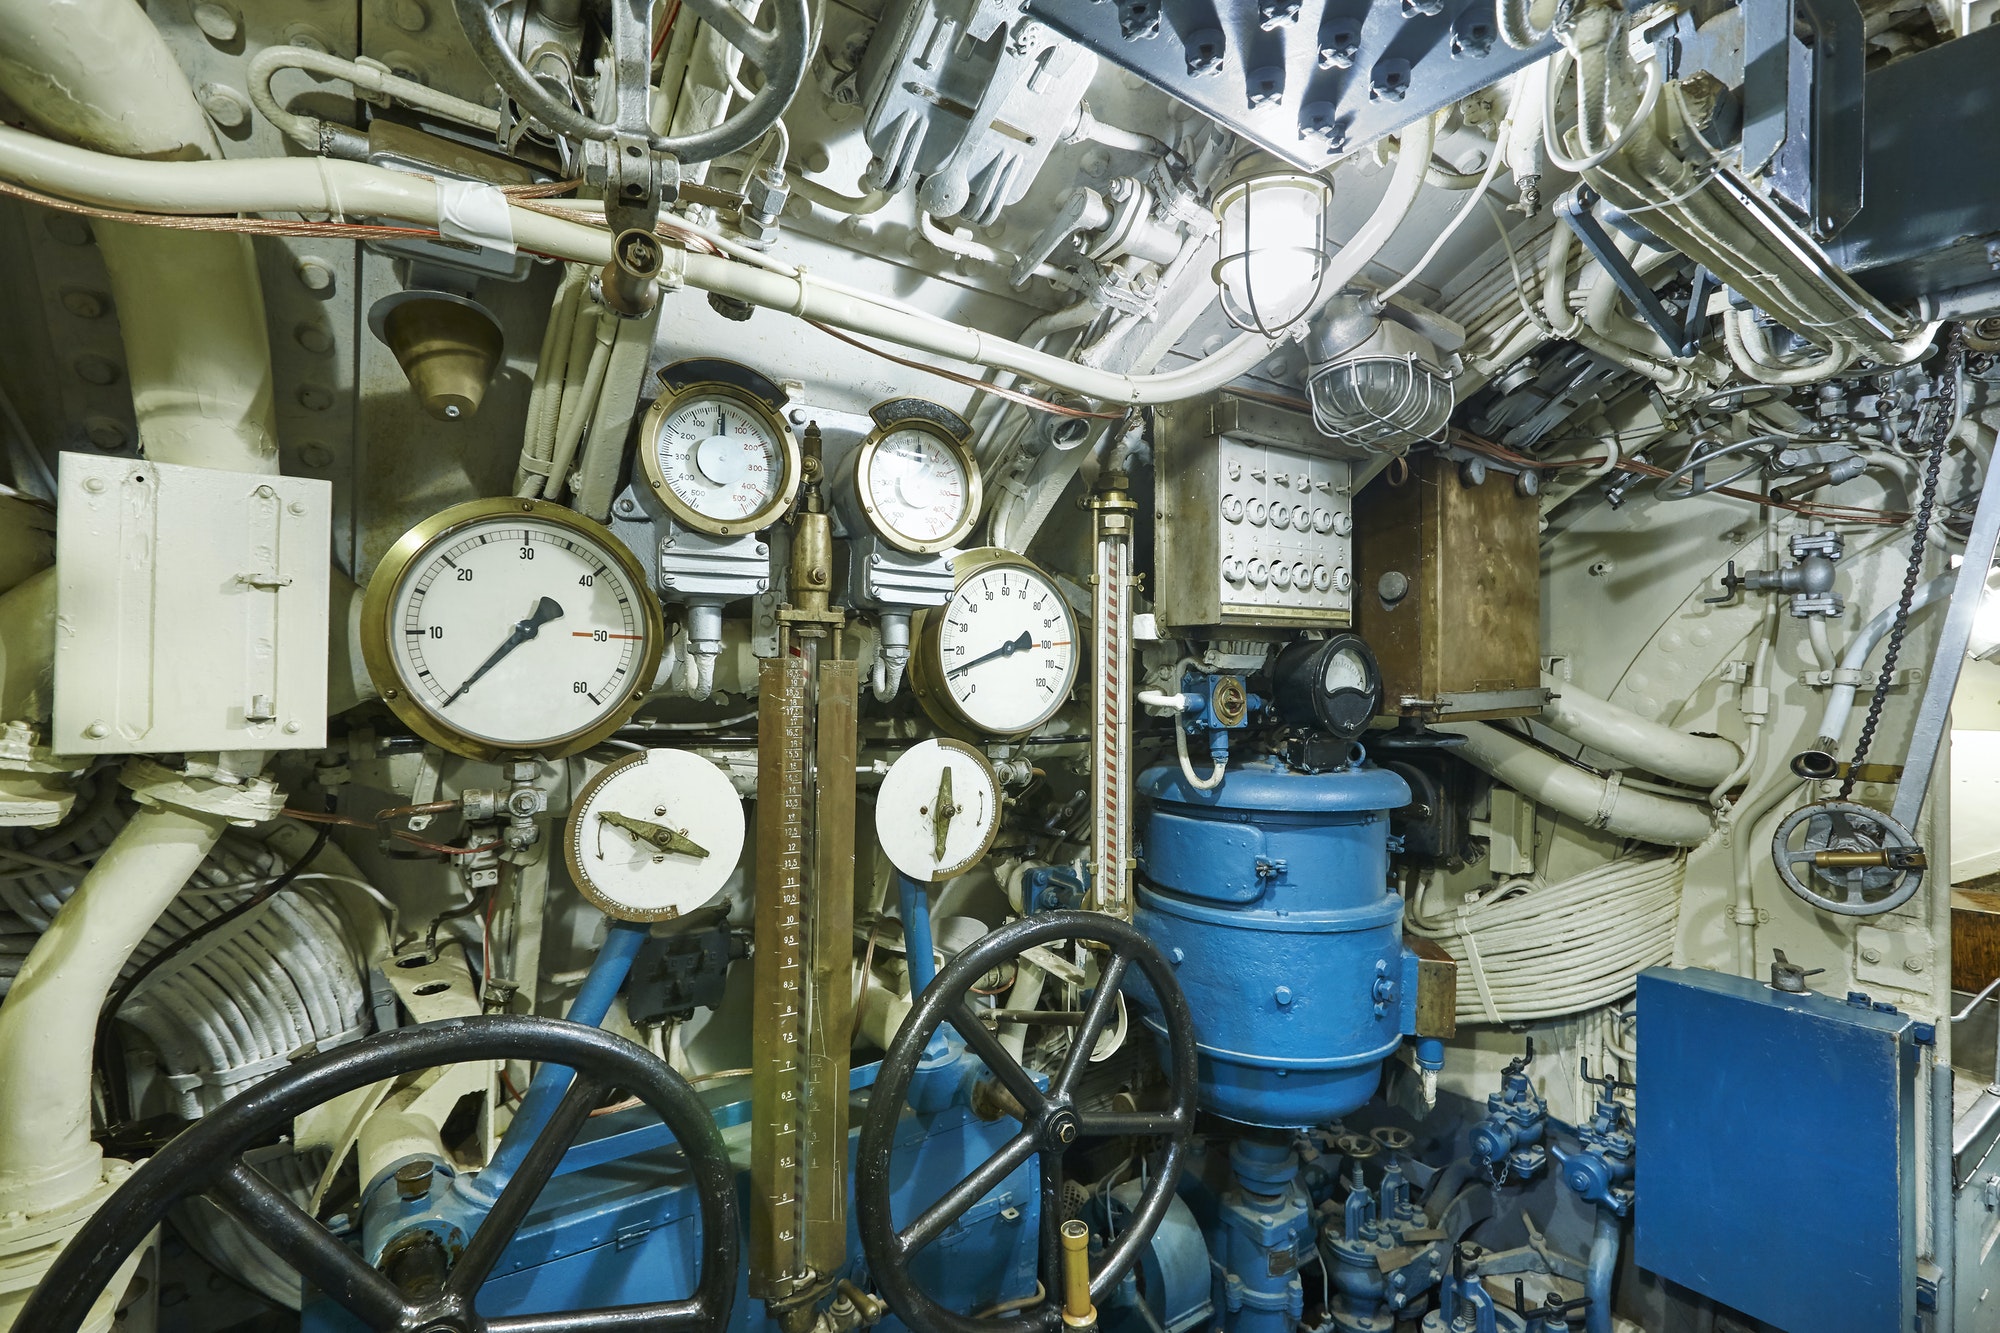 Intérieur d'un sous-marin de la Seconde Guerre mondiale. Vaisseau militaire. Horizontal